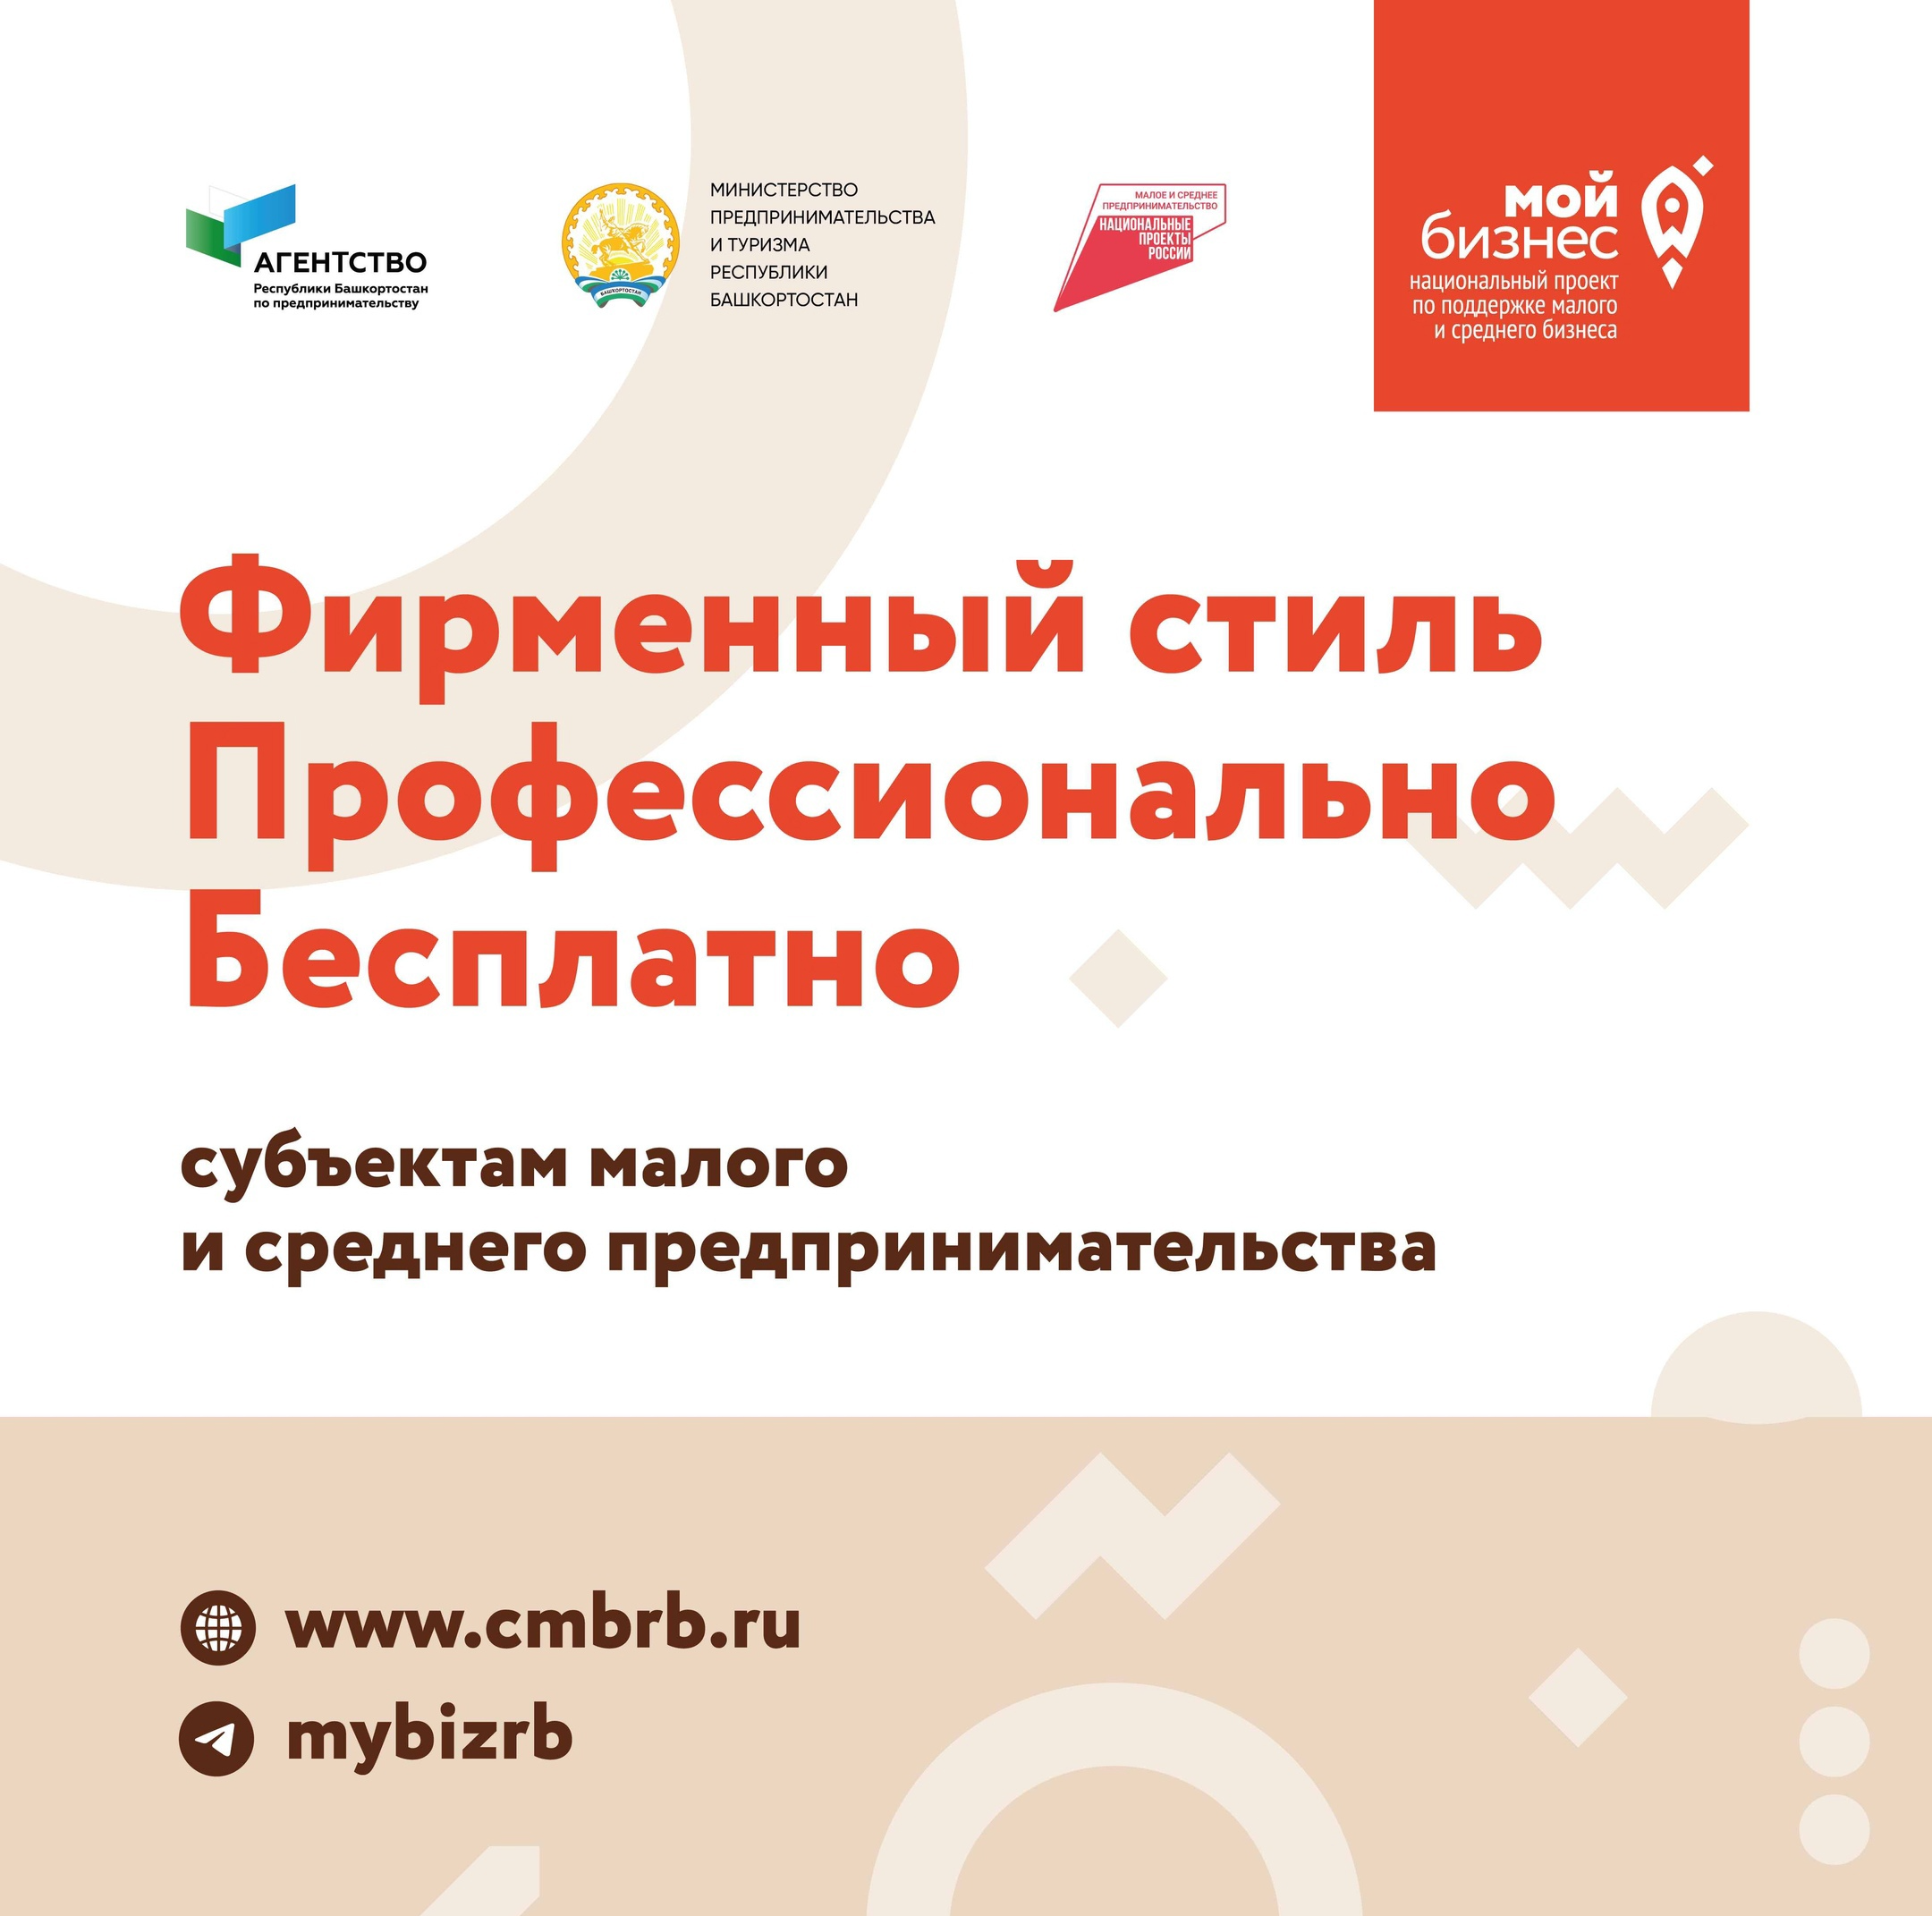 44 предпринимателям  Башкортостана бесплатно разработали фирменный стиль компании